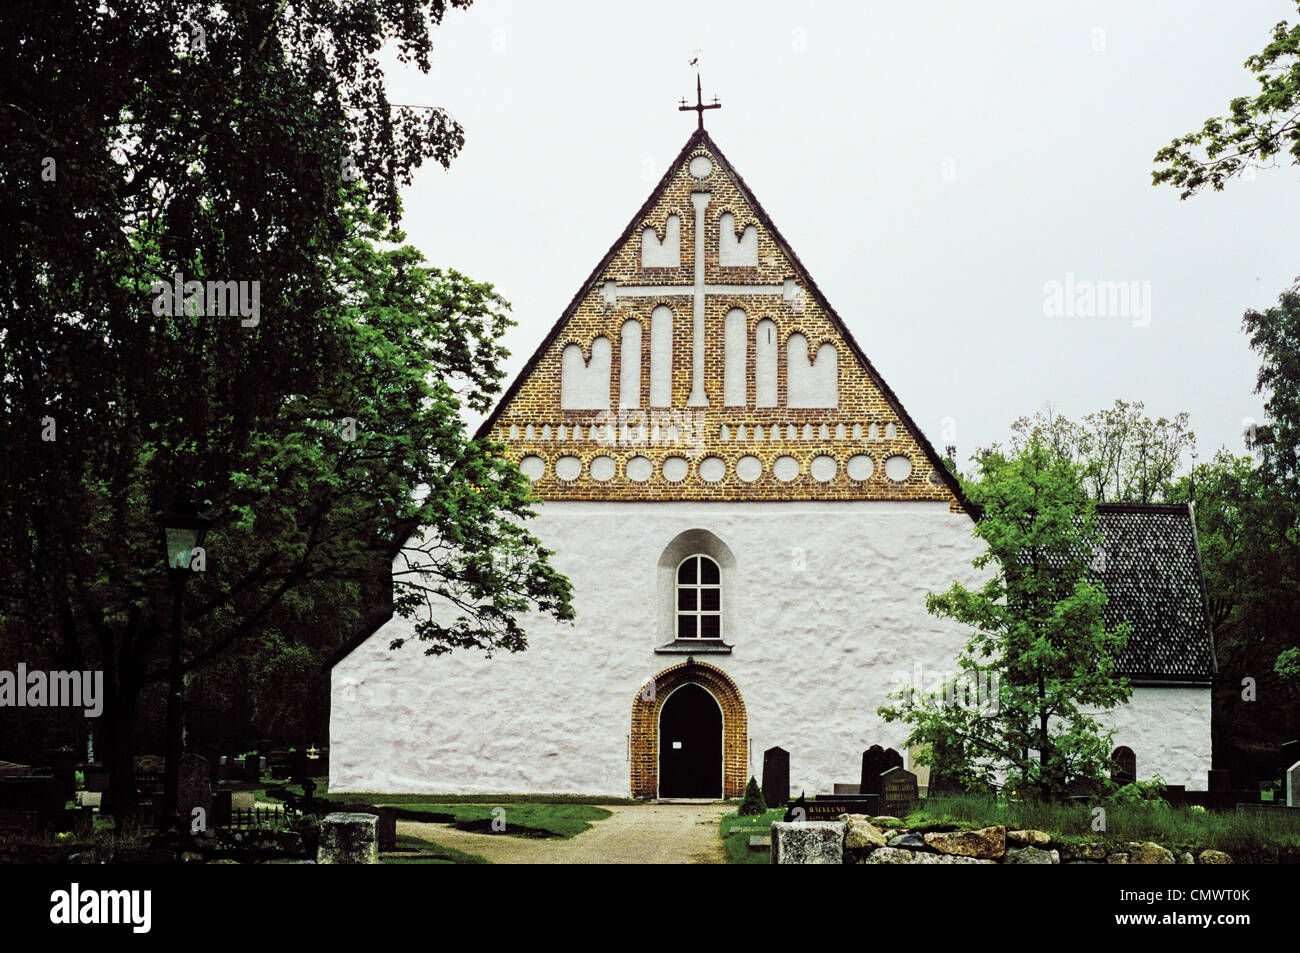 El exterior del medieval del siglo XIV de la iglesia Saint Michael Perna, Finlandia Foto de stock